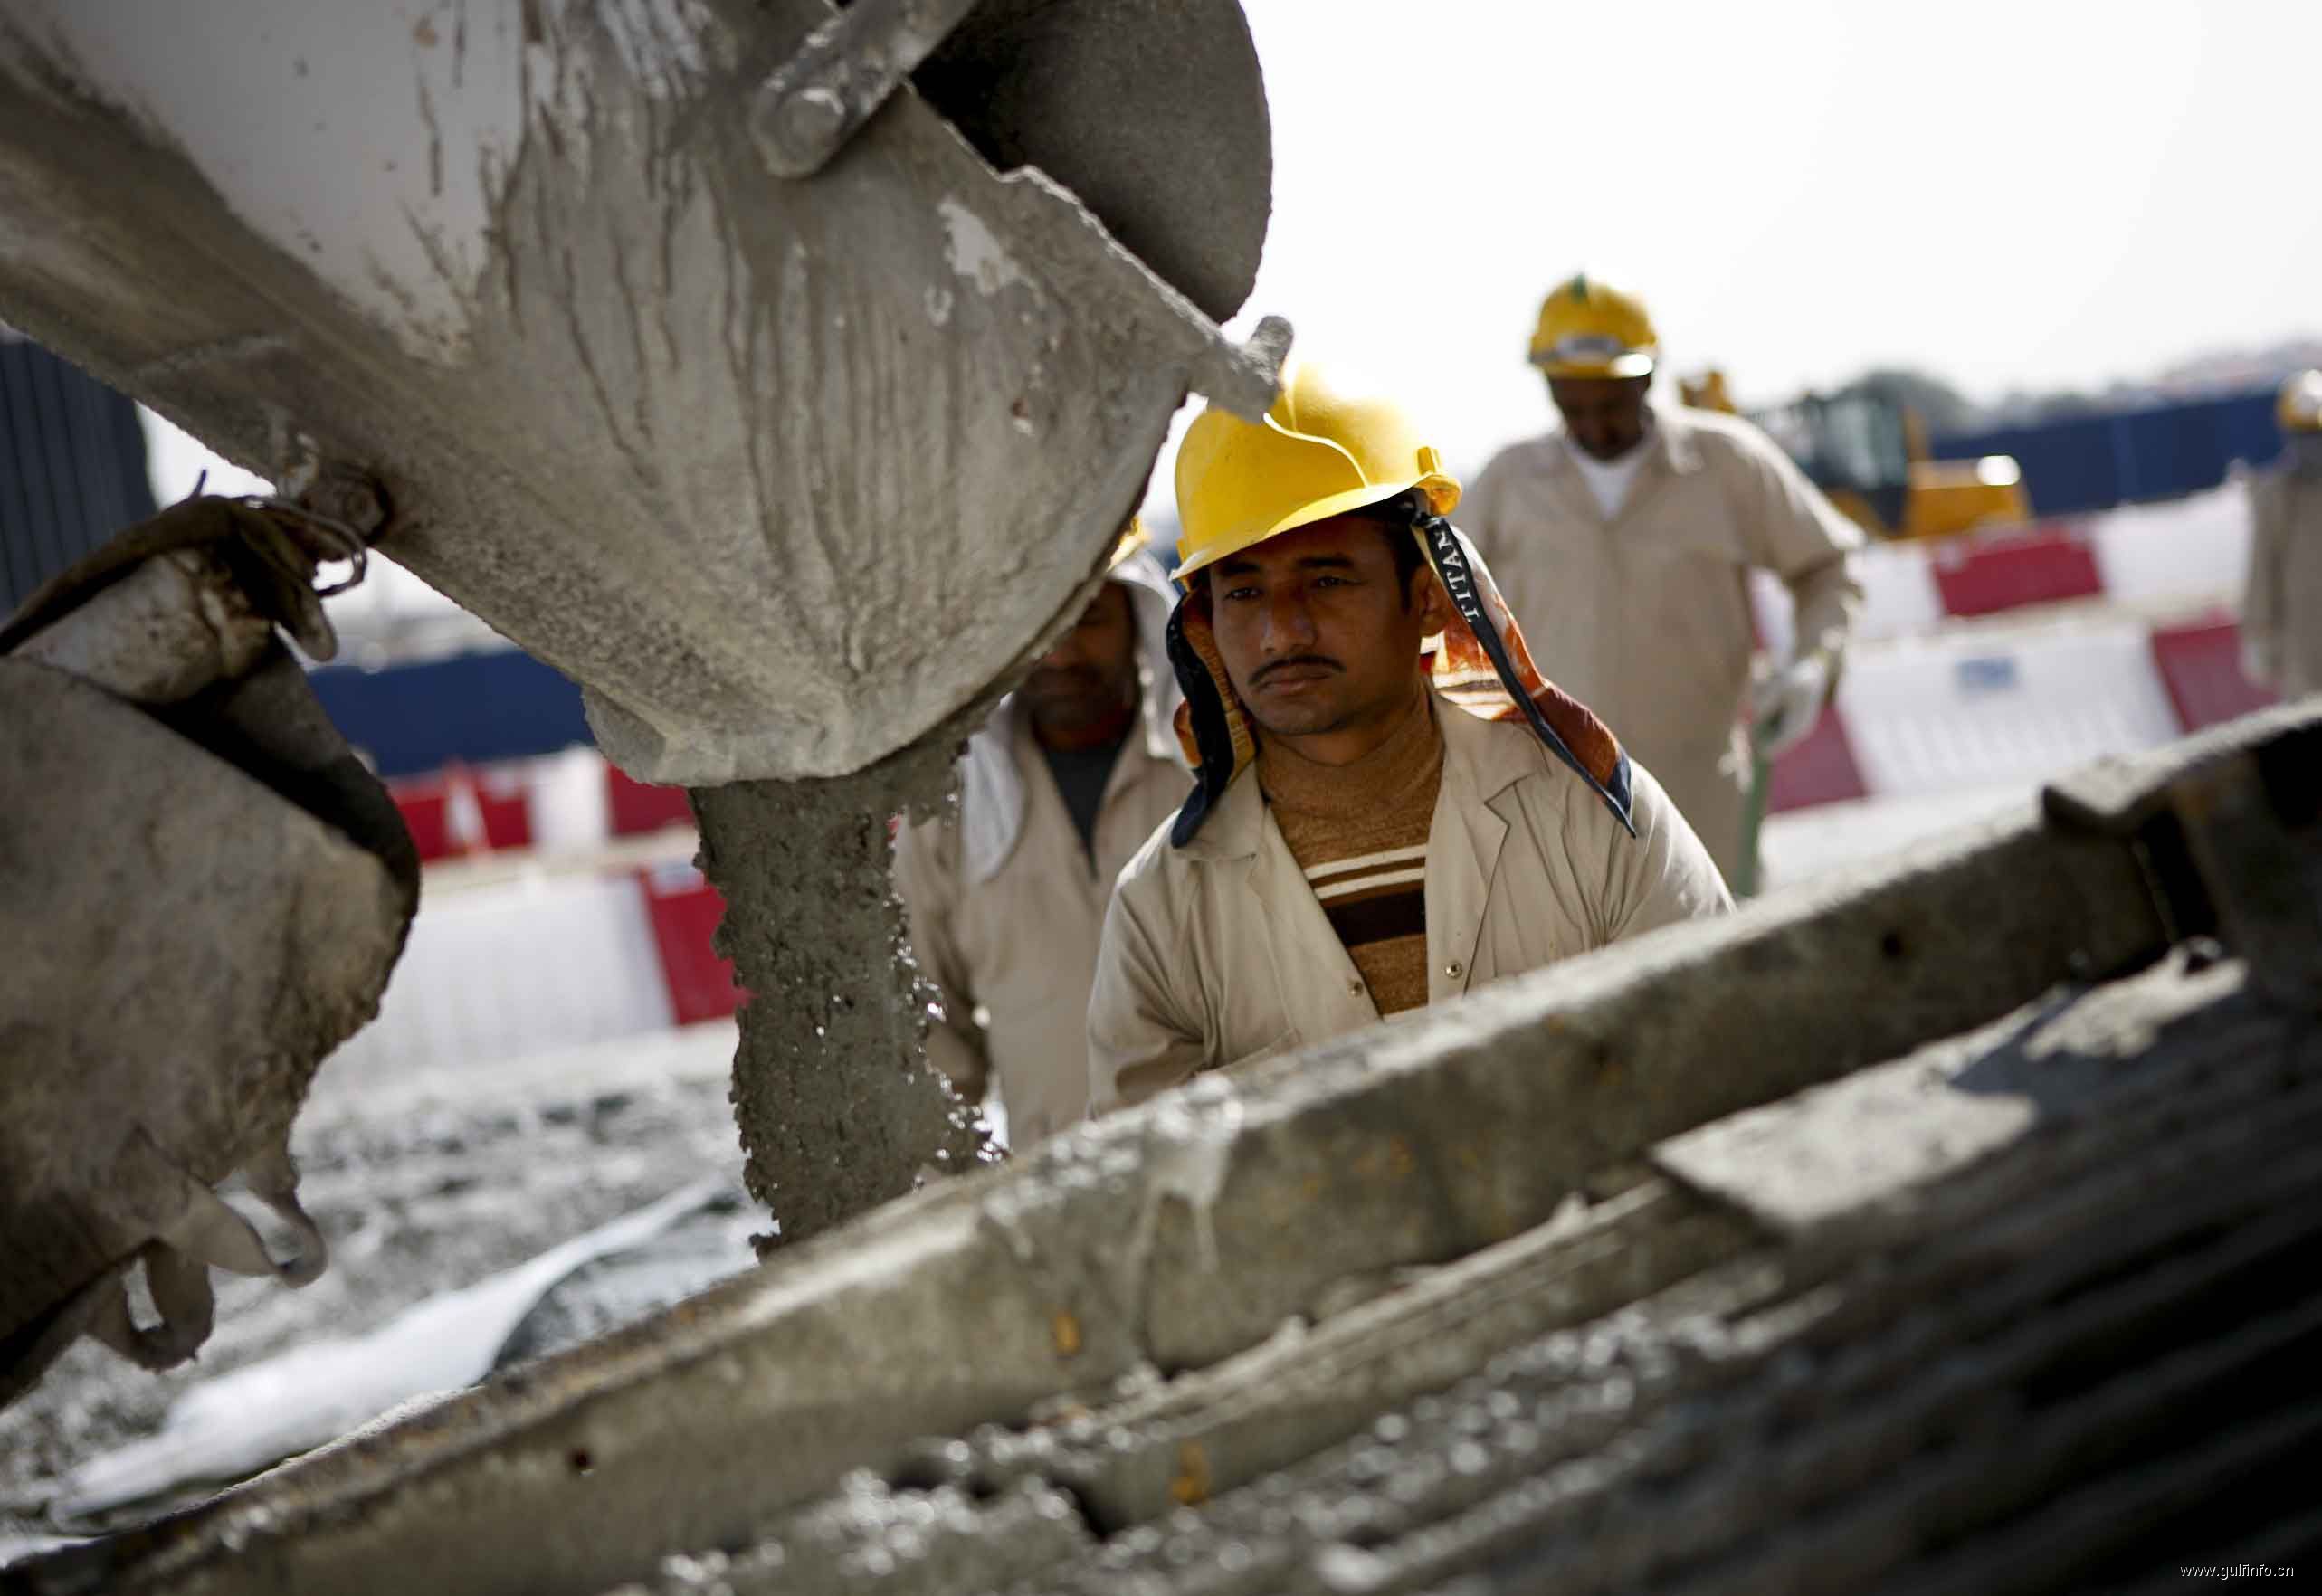 海合会国家混凝土需求将达490亿美元